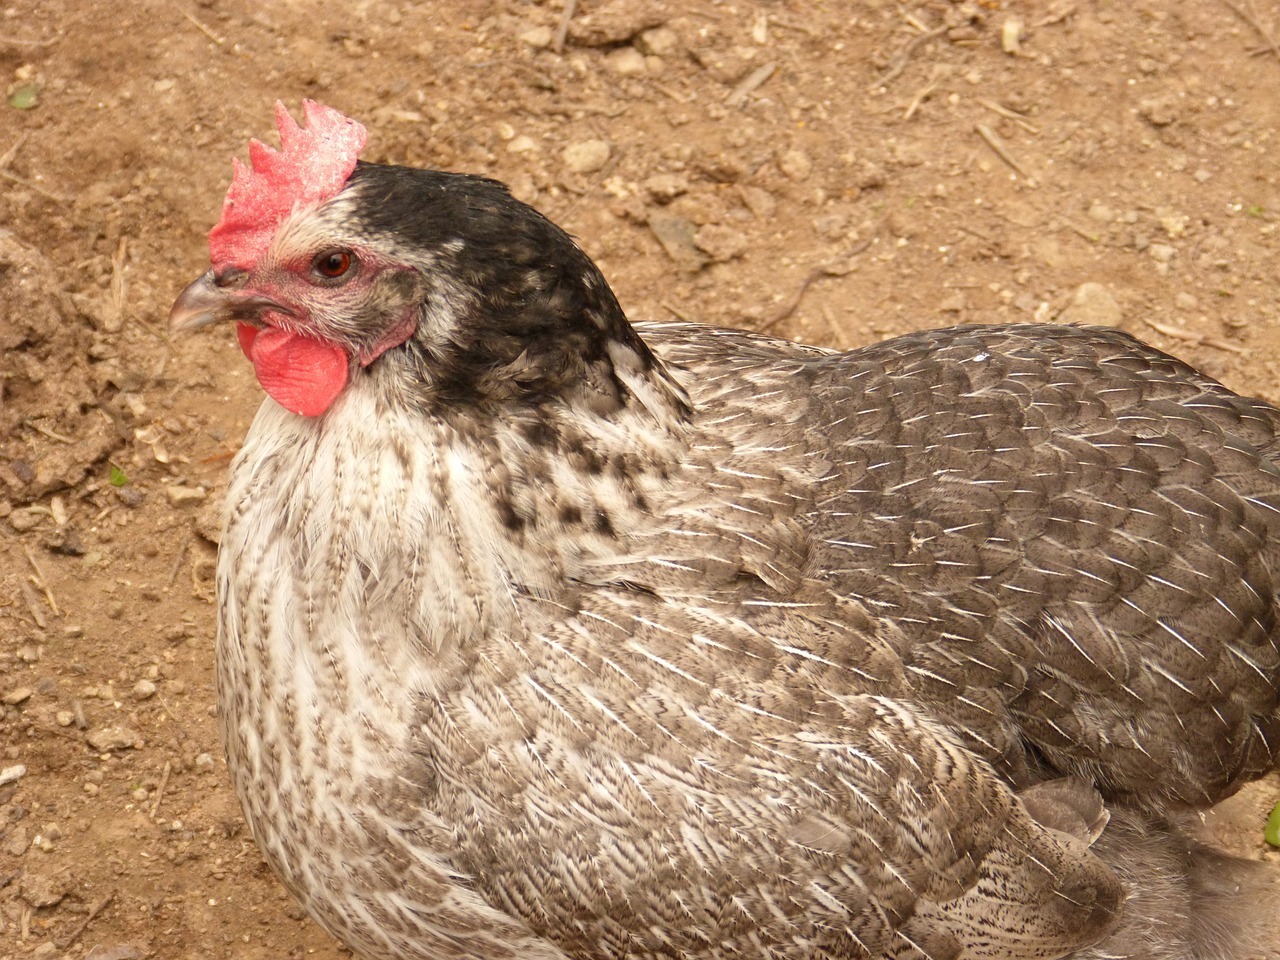 El Virus de la Bronquitis Infecciosa Aviar, conocido comúnmente como IBV, es una infección viral altamente contagiosa que afecta gravemente a las aves de corral, especialmente a los pollos, ponedoras y pavos.